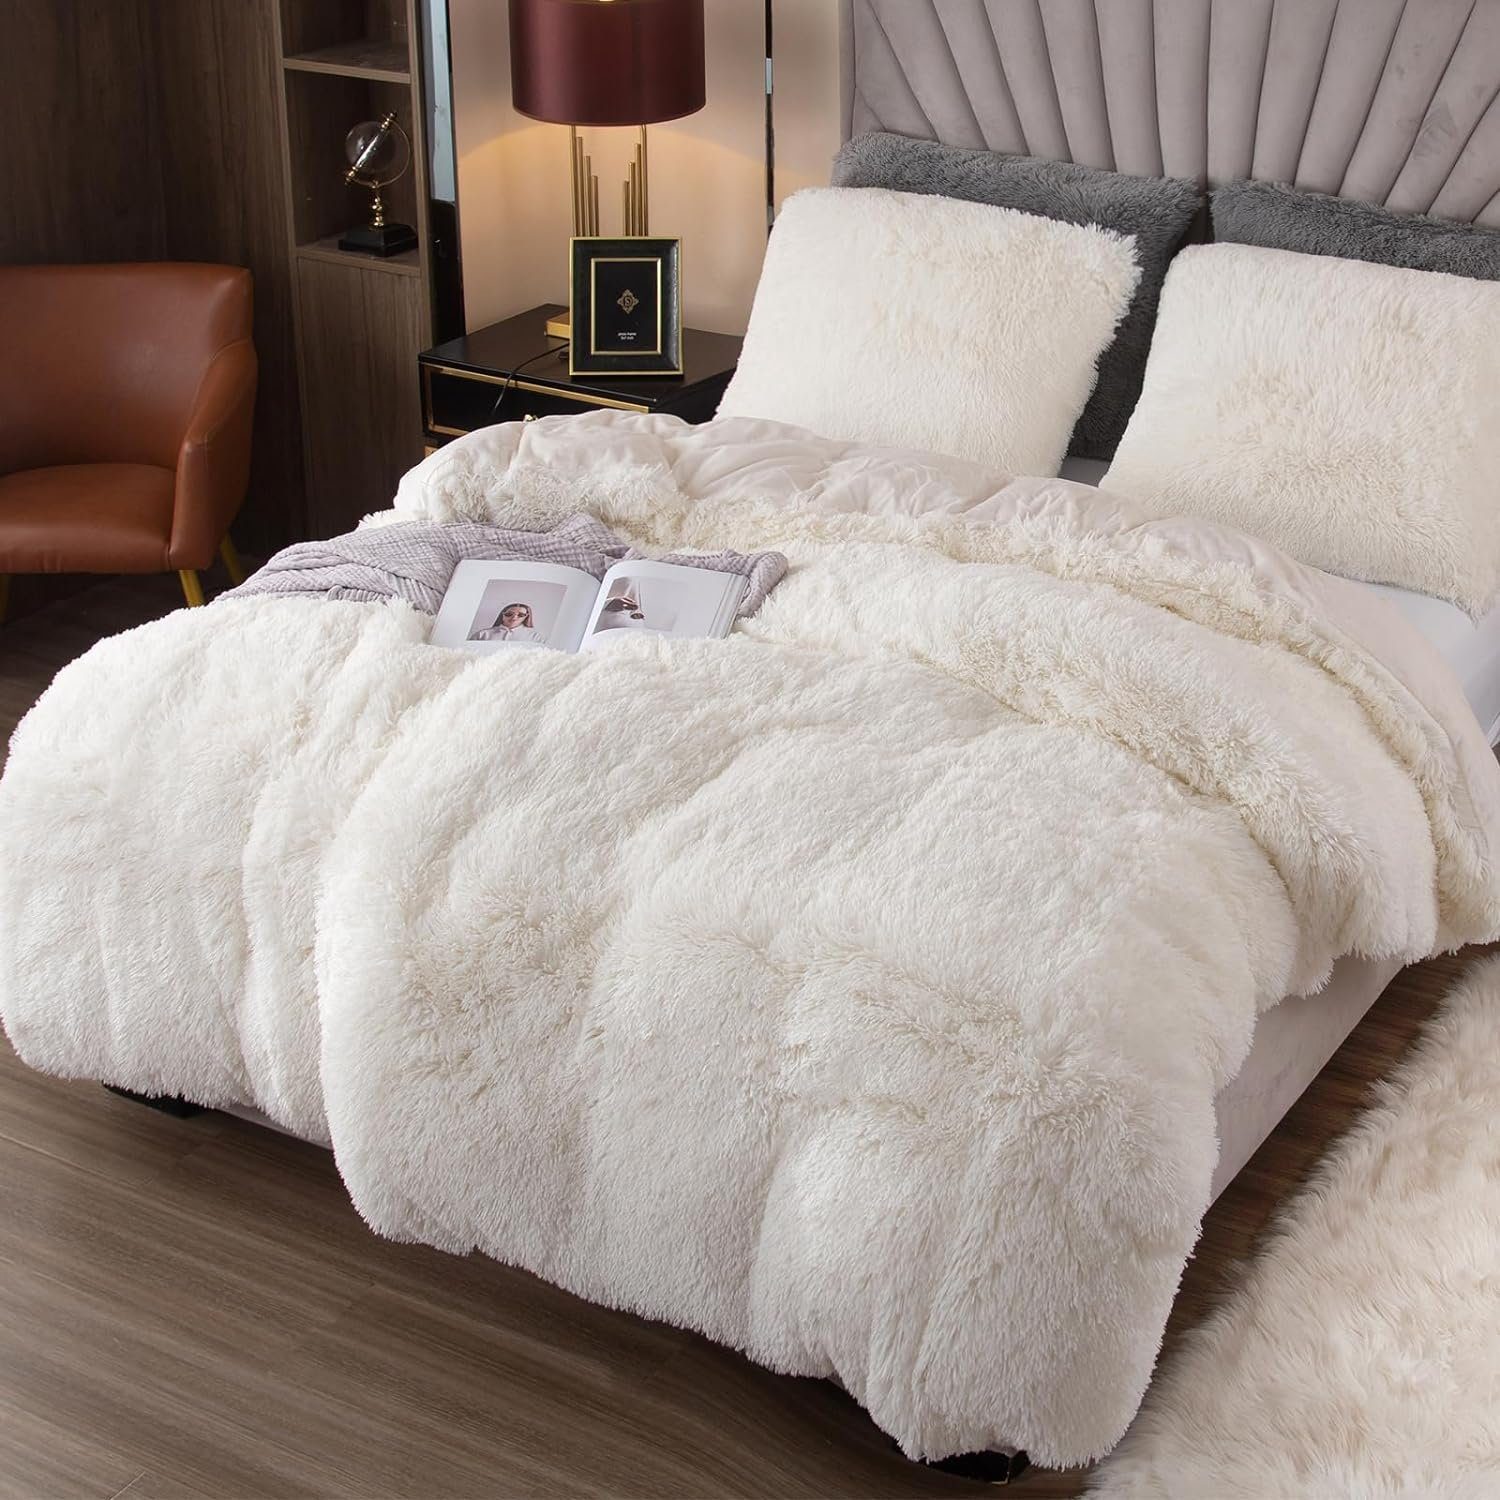 Bettwäsche Plüsch mit Felloptik,Warme flauschige Kissenbezug 80x80 Weiß Bettwäsche,Extra Mutoy, Bettbezug, Deckenbezug und Reißverschluss Flanell